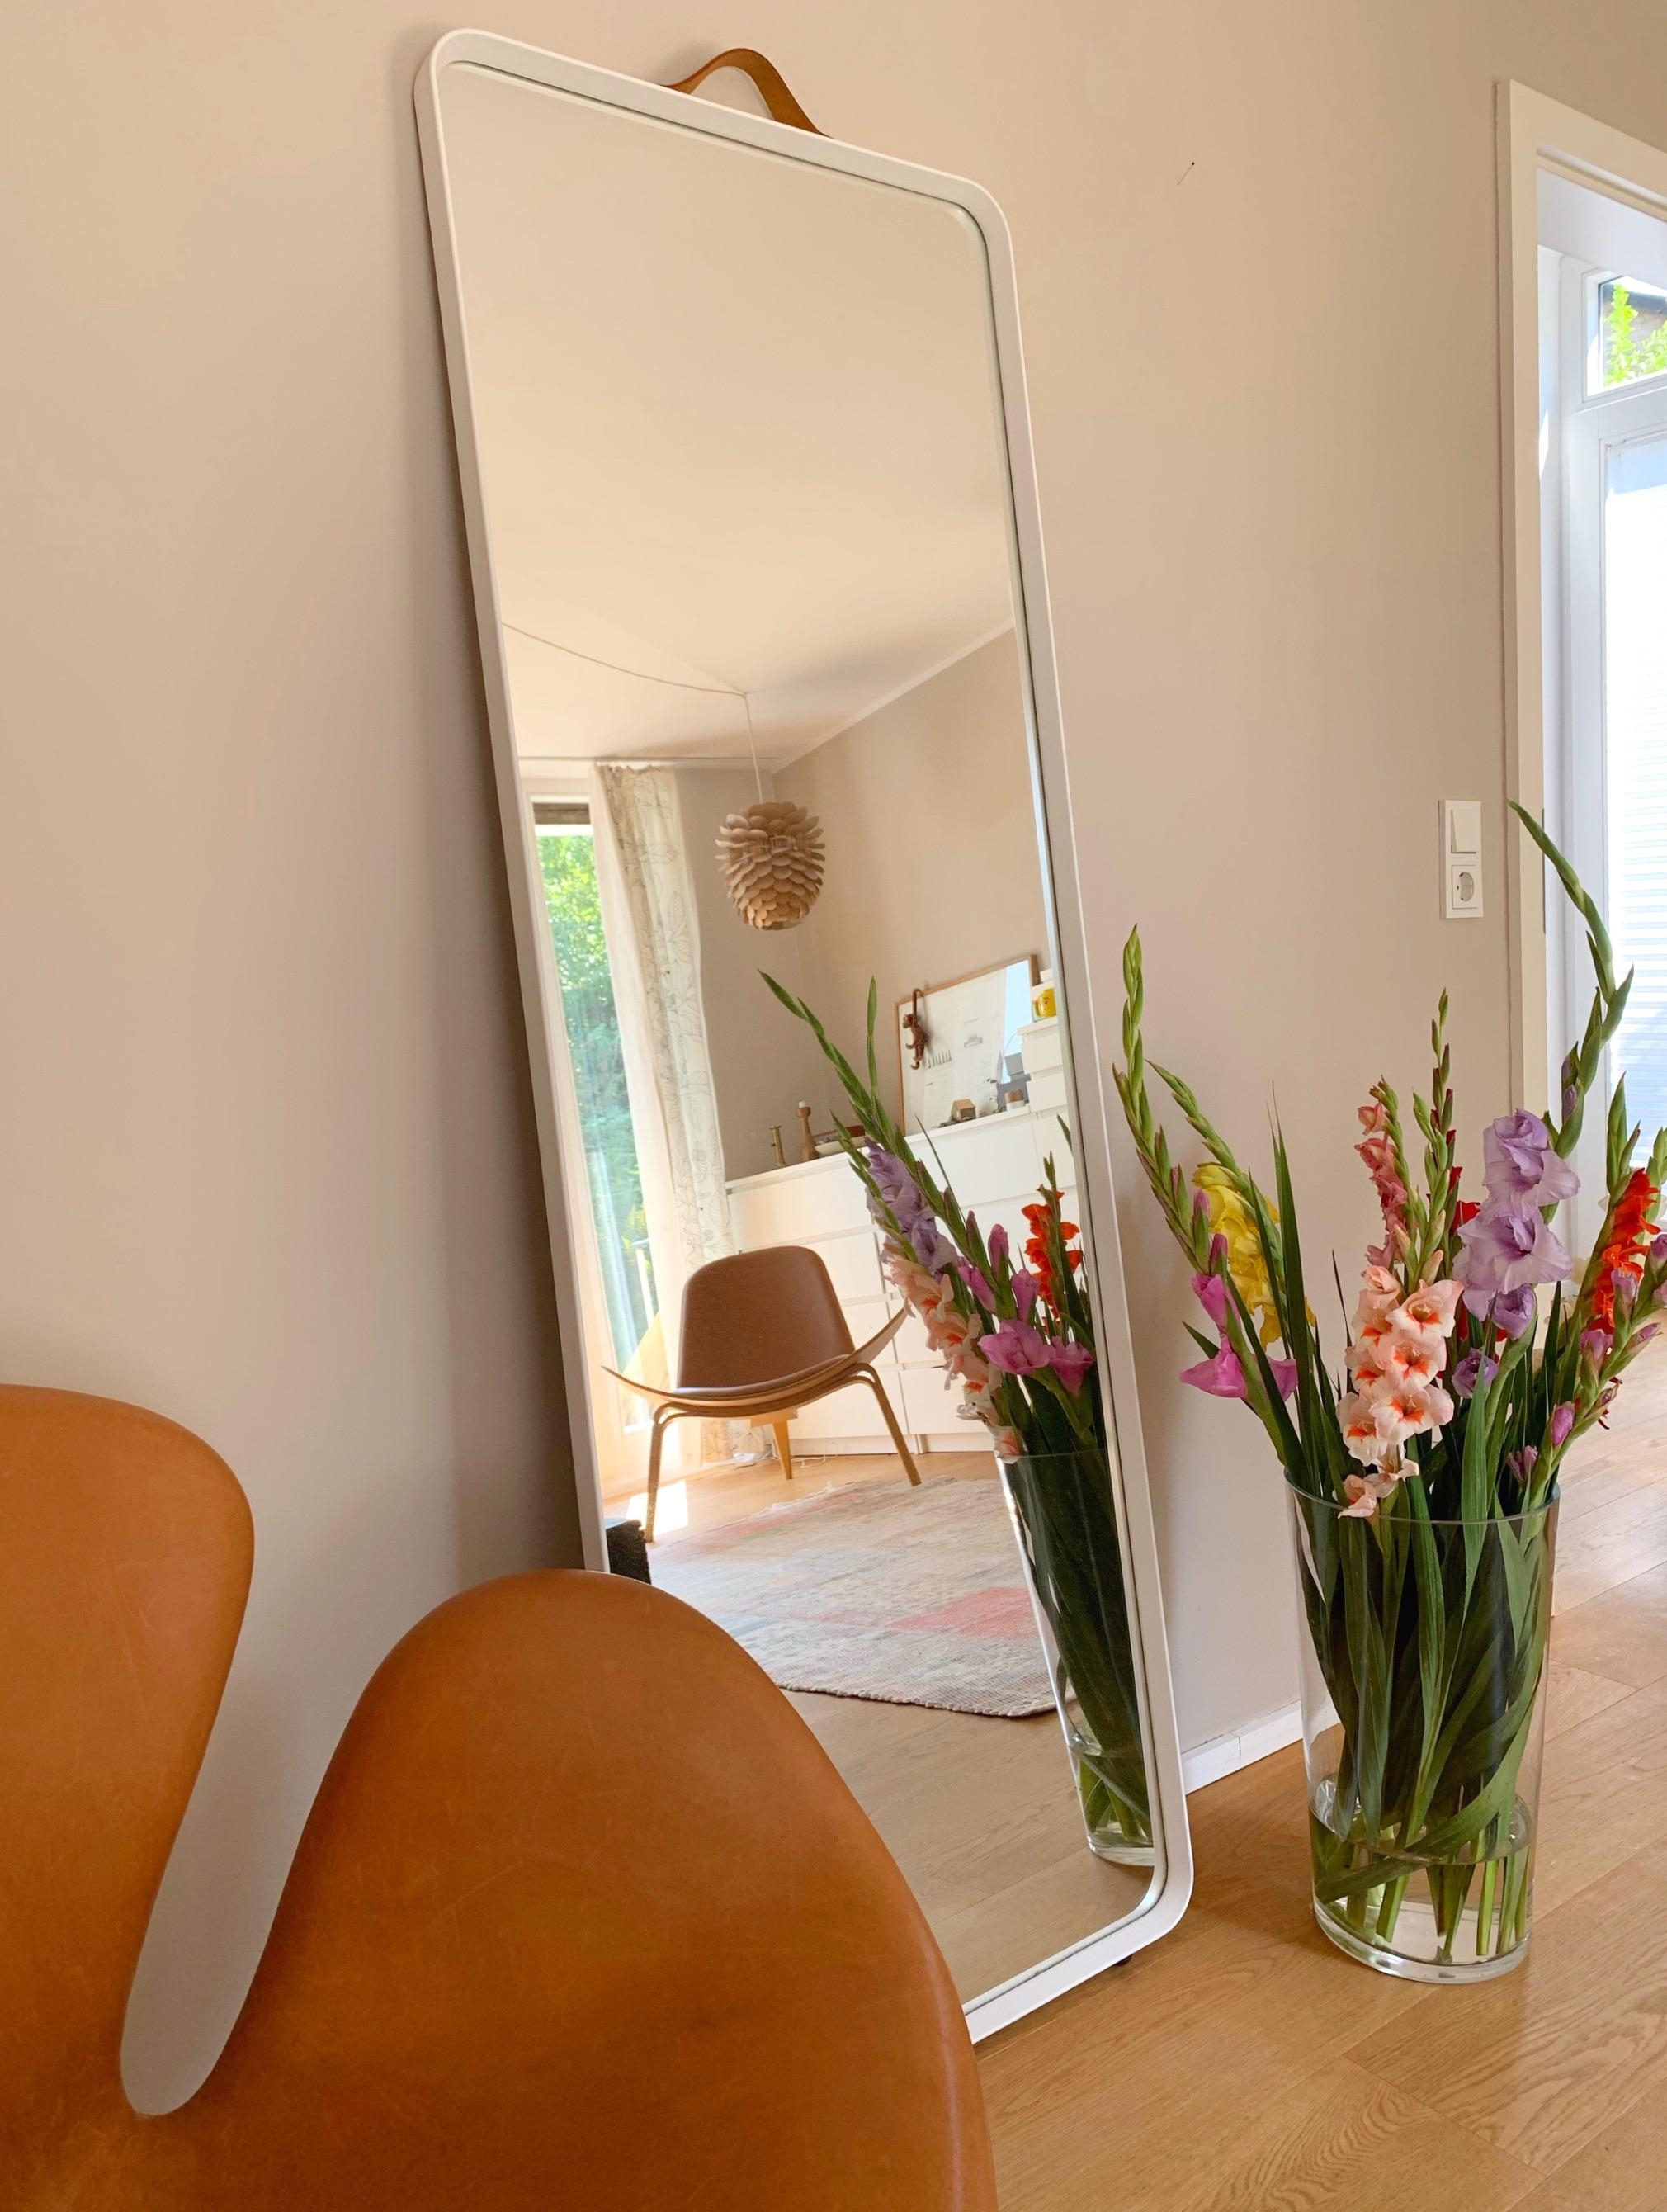 Gladiolen im Schlafzimmer 
#scandistyle #spiegel #hyggehome #freshflowers #bedroom #couchliebt